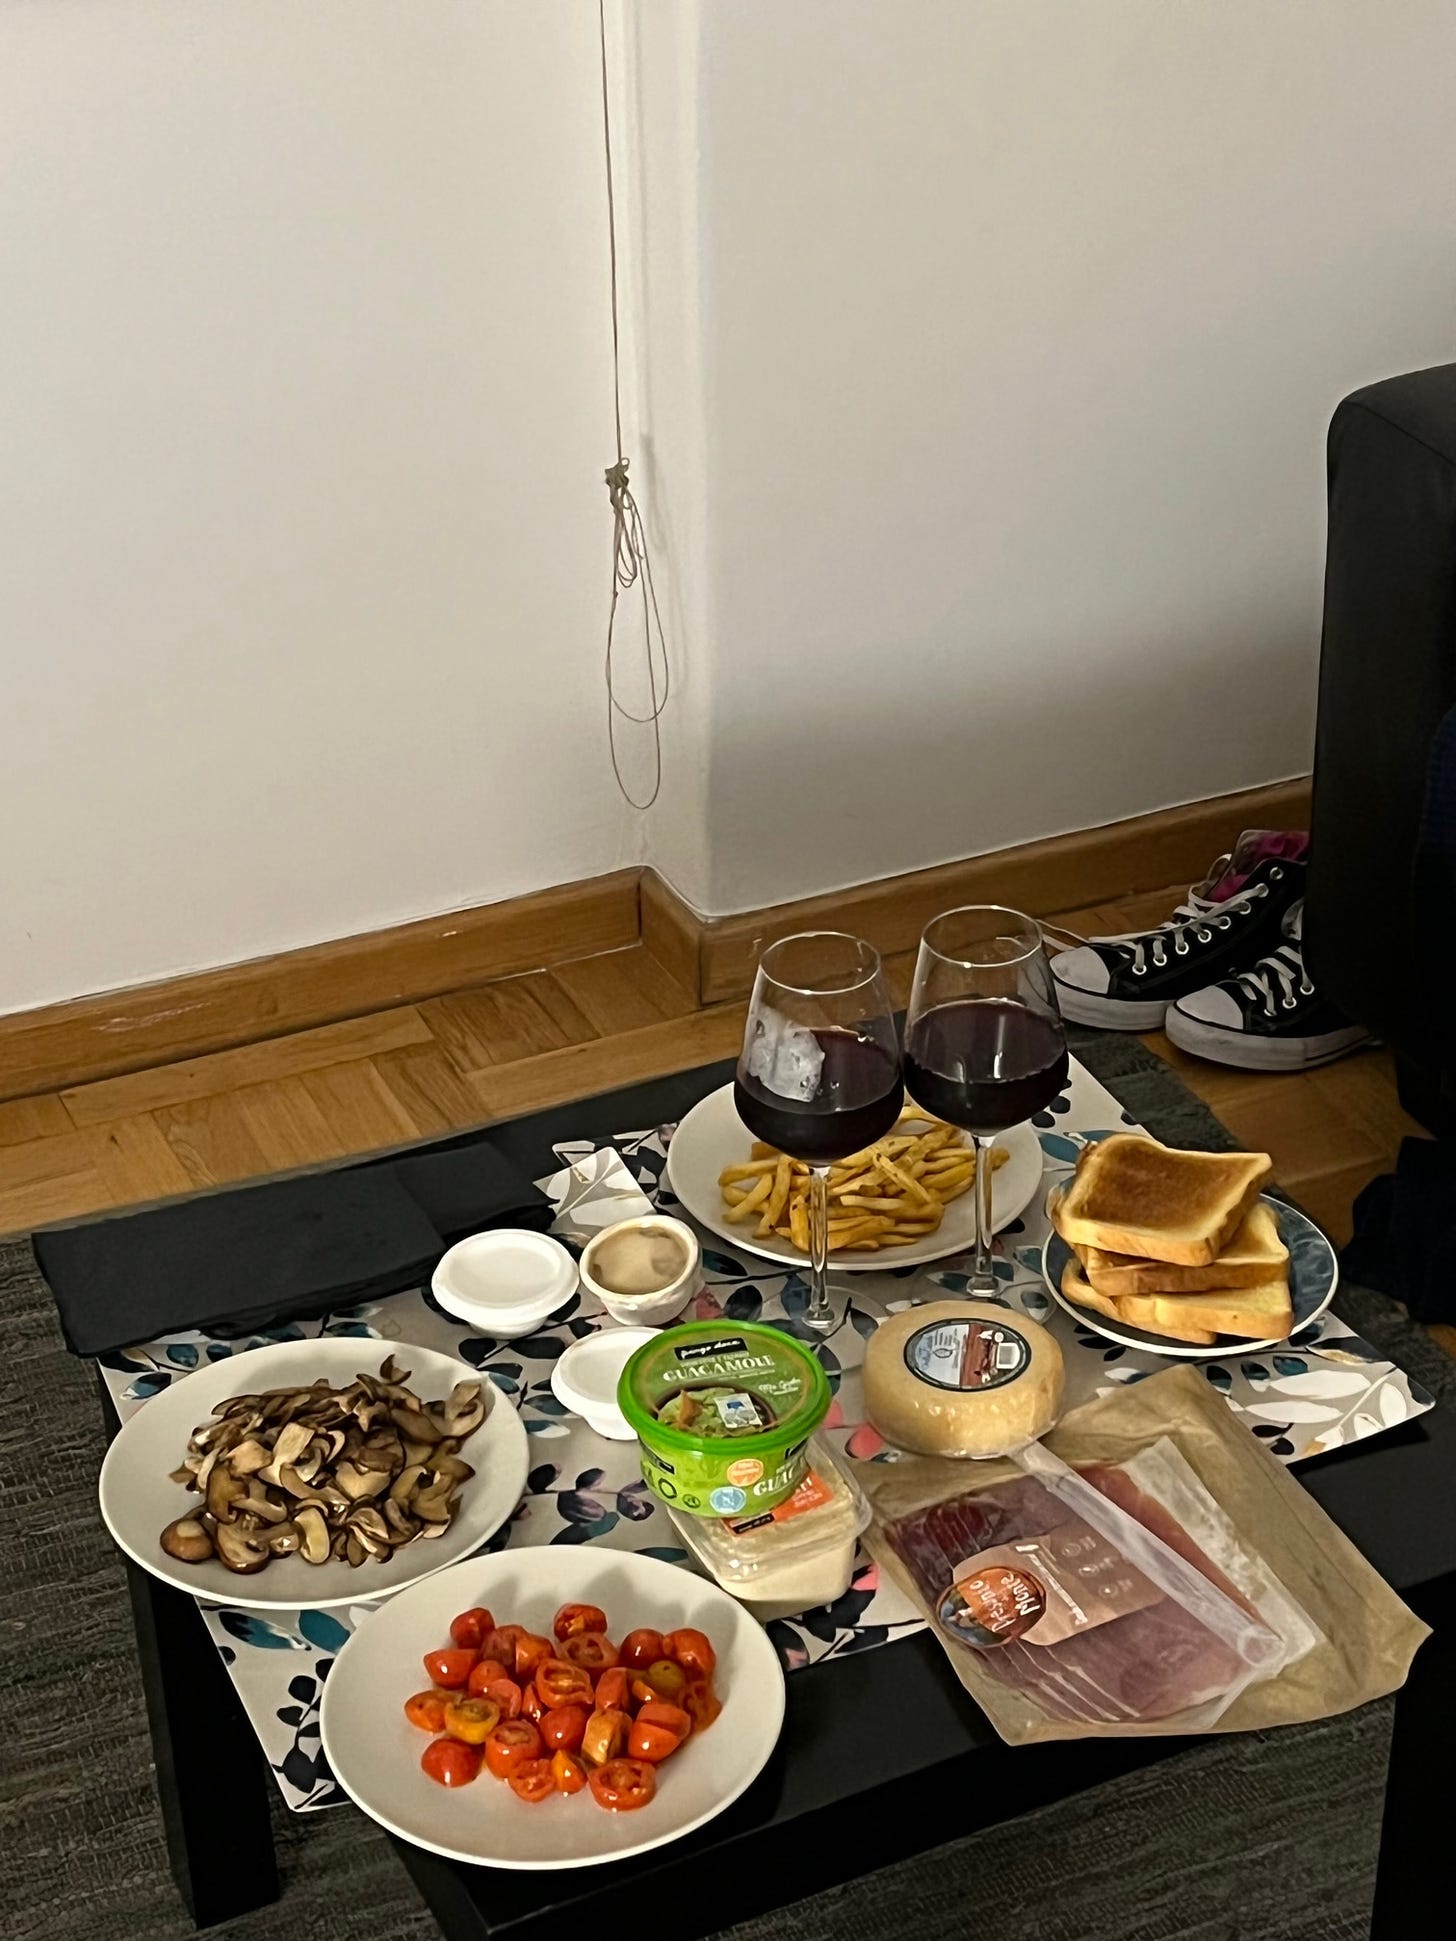 Jantar improvisado no chão da sala do nosso airbnb em Lisboa: tomatinhos, cogumelos, pão, queijos, duas taças de vinho, hommus e guacamole